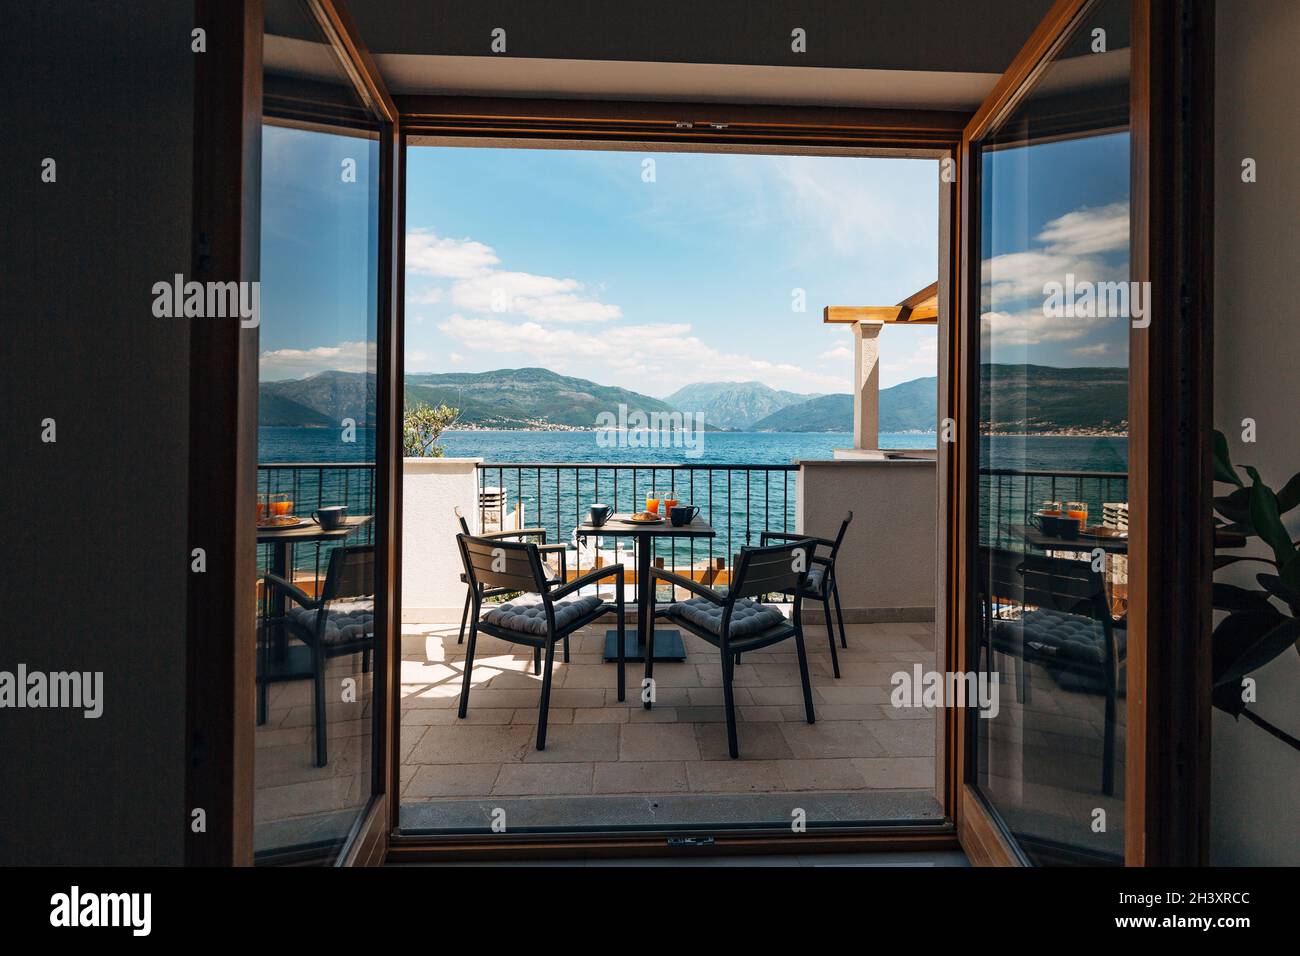 Vue de l'appartement sur la mer.Balcon avec mobilier de jardin et petit déjeuner sur la table.Croissants et orange fraîchement pressé Banque D'Images